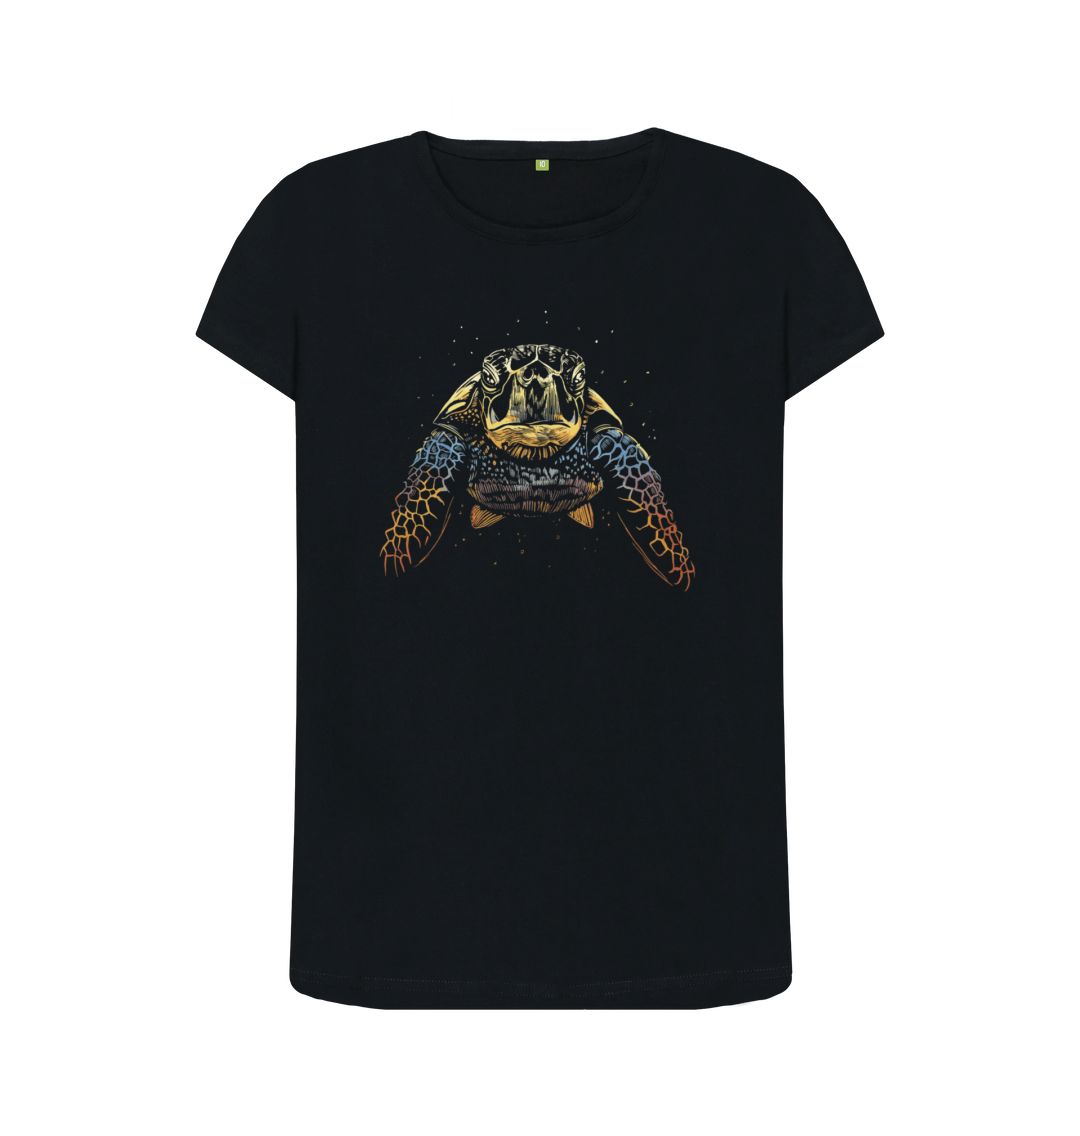 Black The Colour Turtle Women's Crew Neck T-Shirt